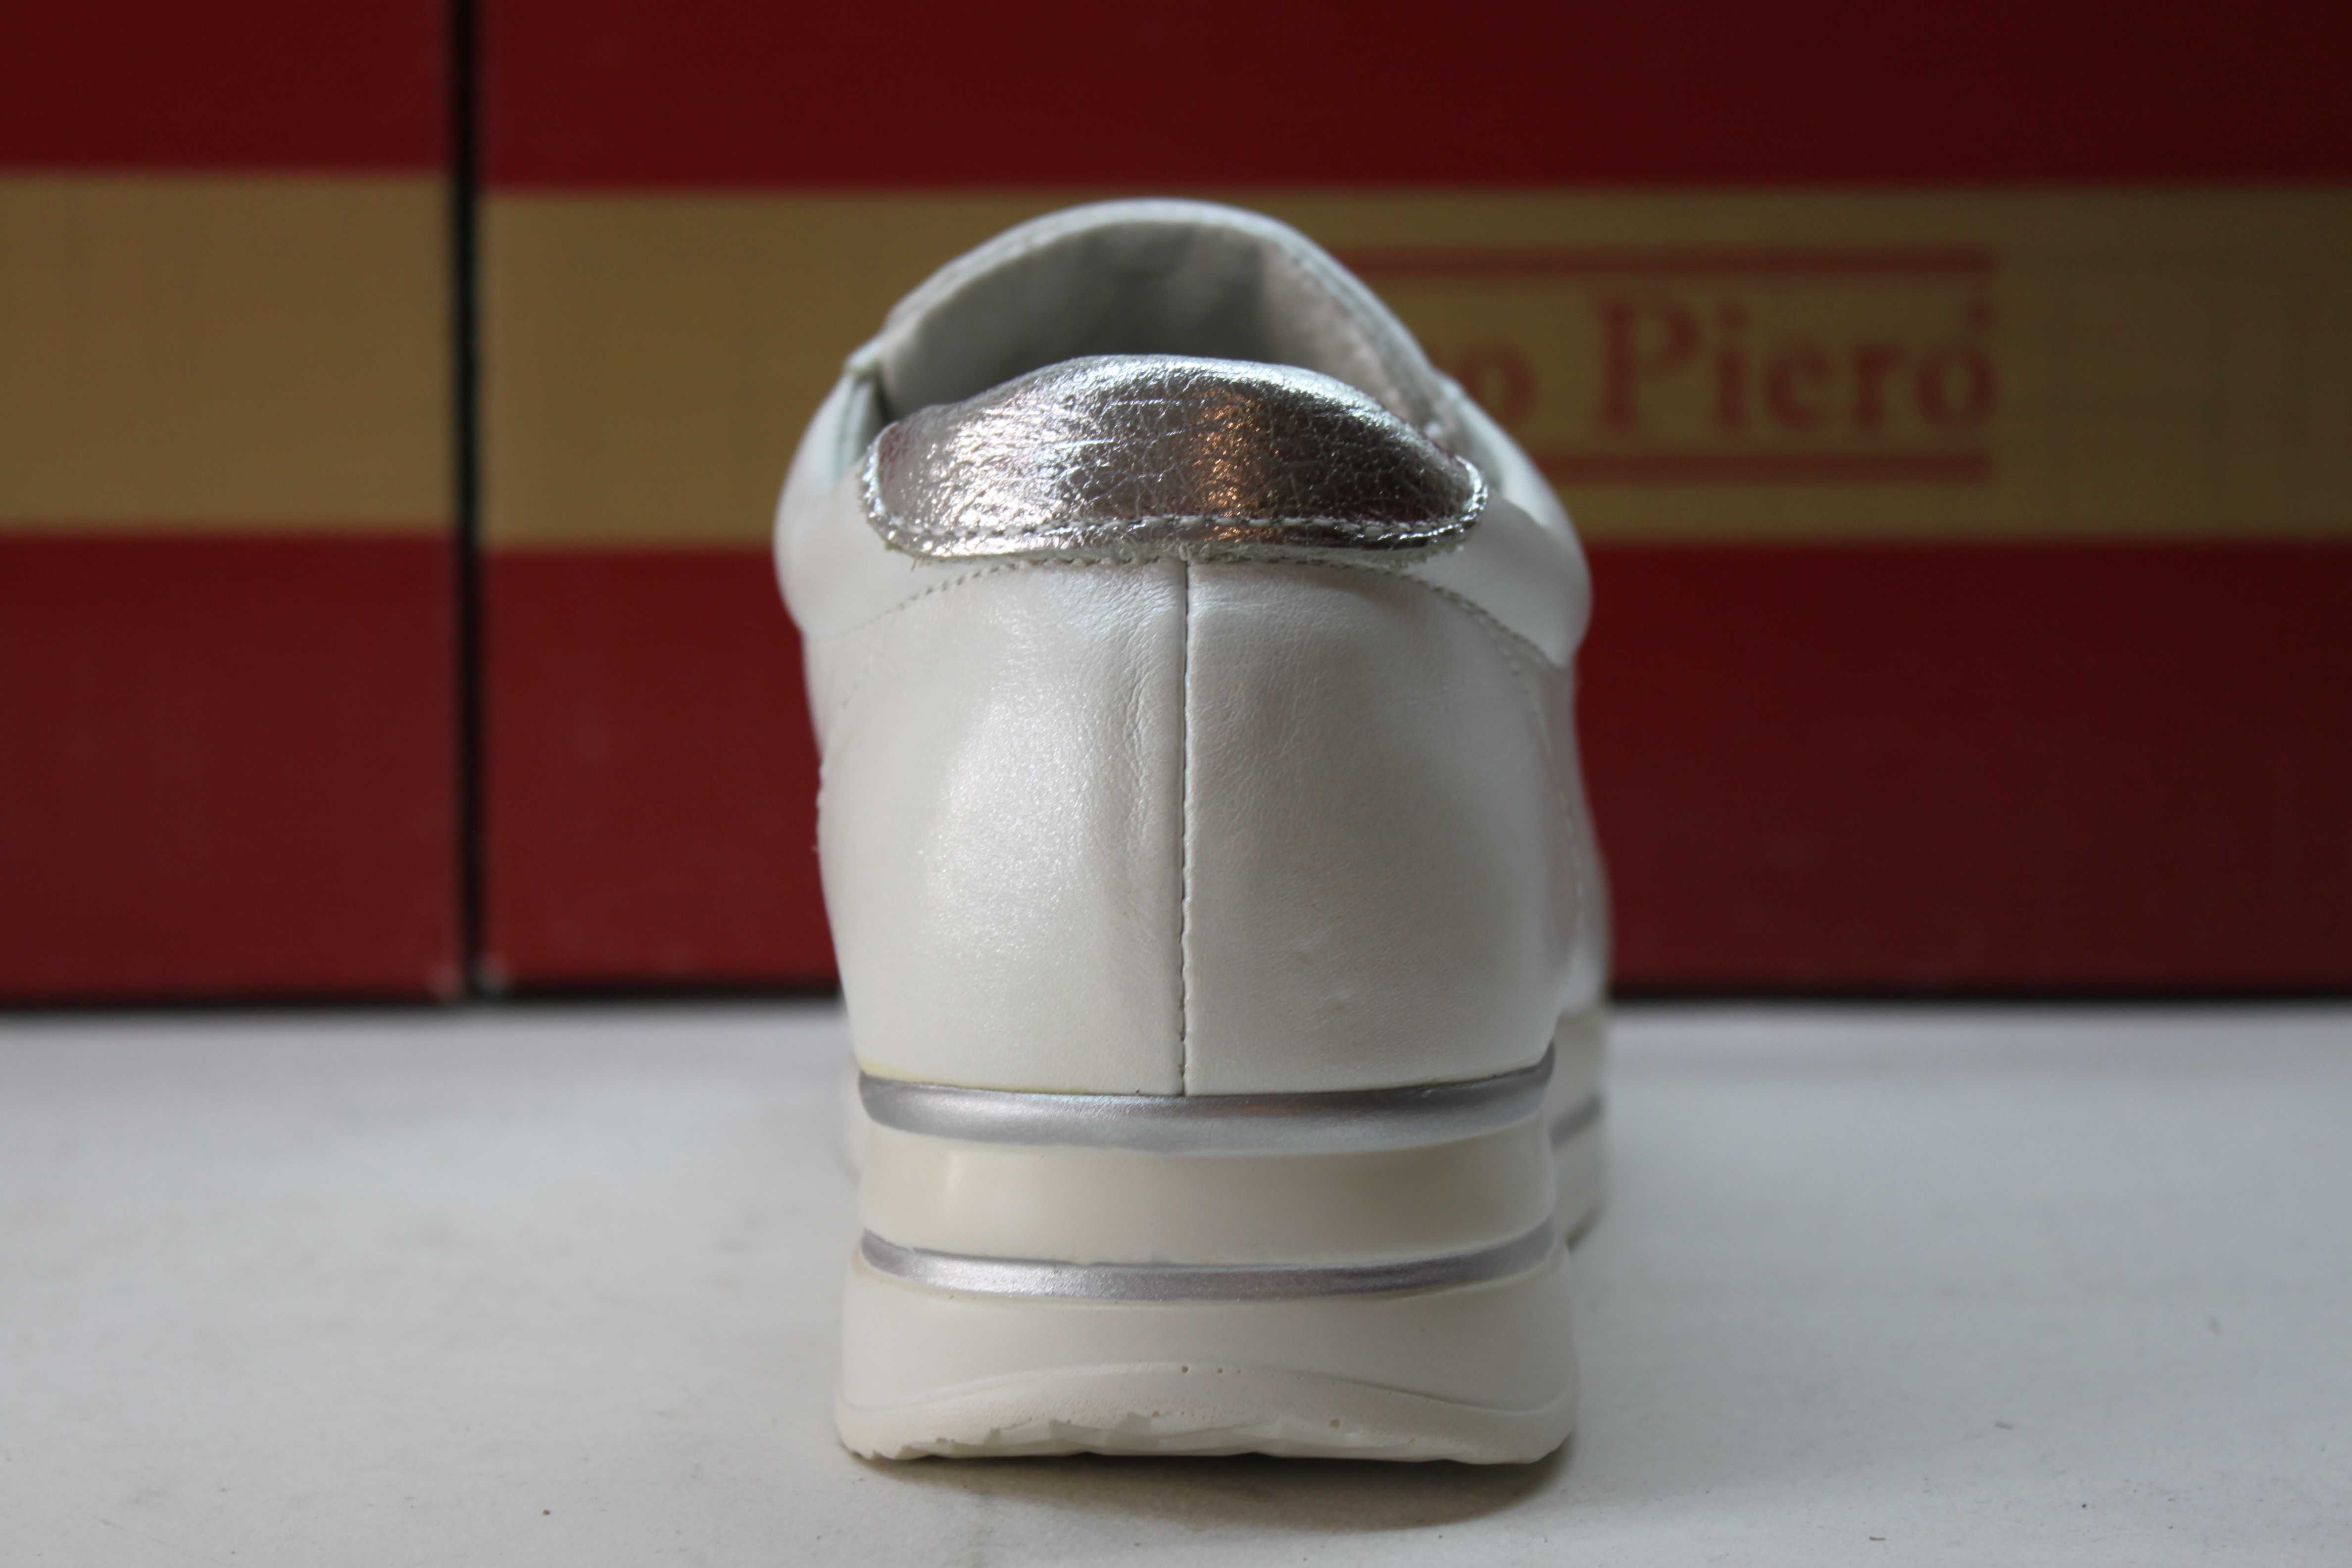 Женские белые кроссовки - кросівки - туфли (код:1047-2бел.) Распродажа